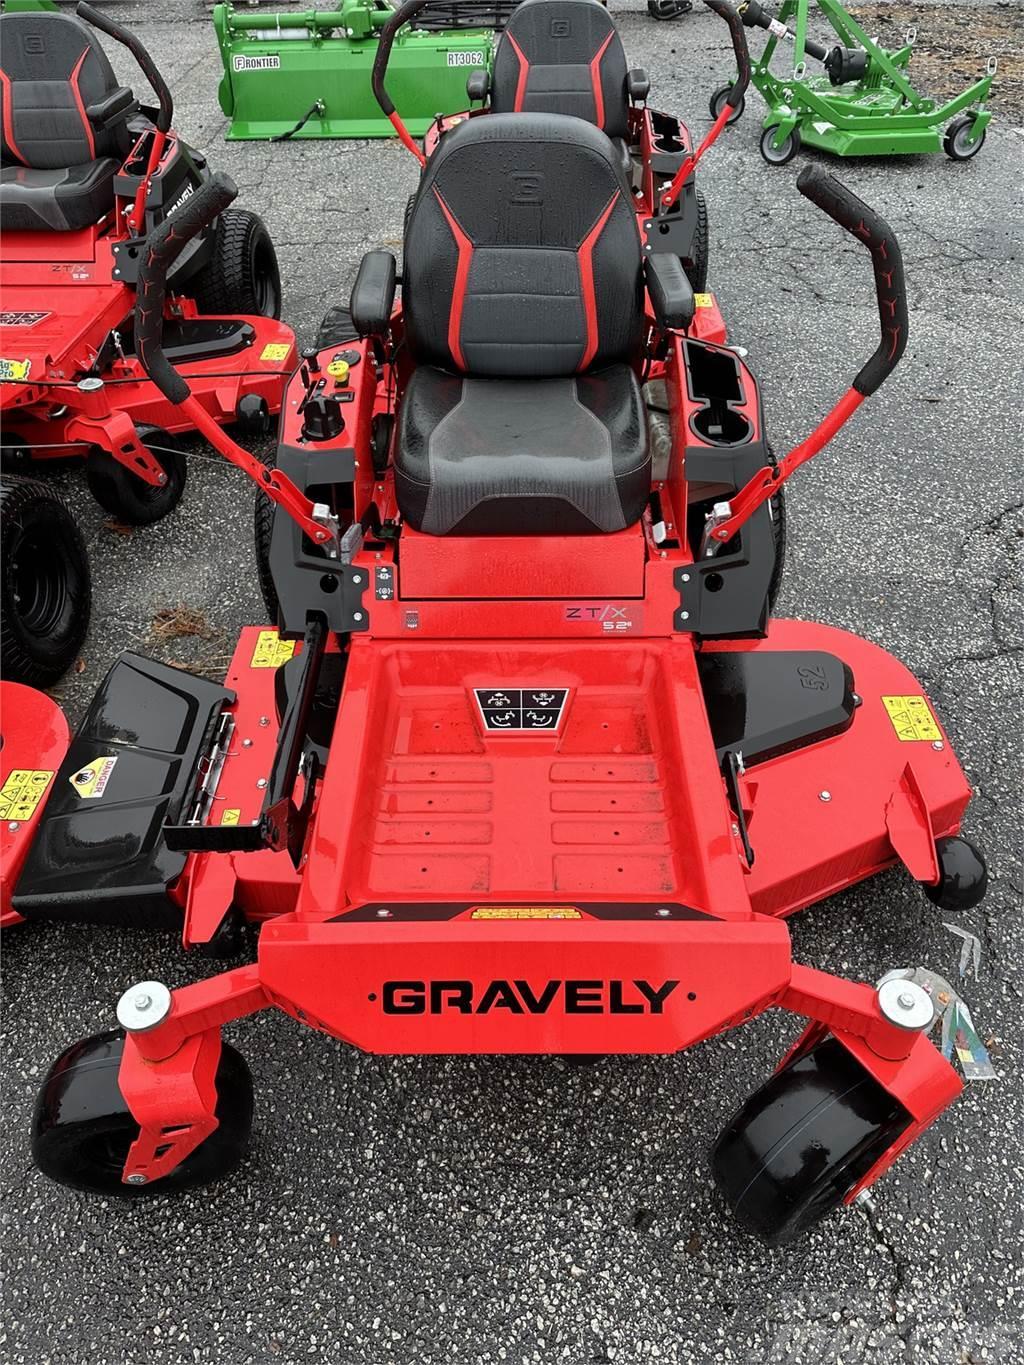 Gravely 915257 Sıfır dönüşlü çim biçme makineleri